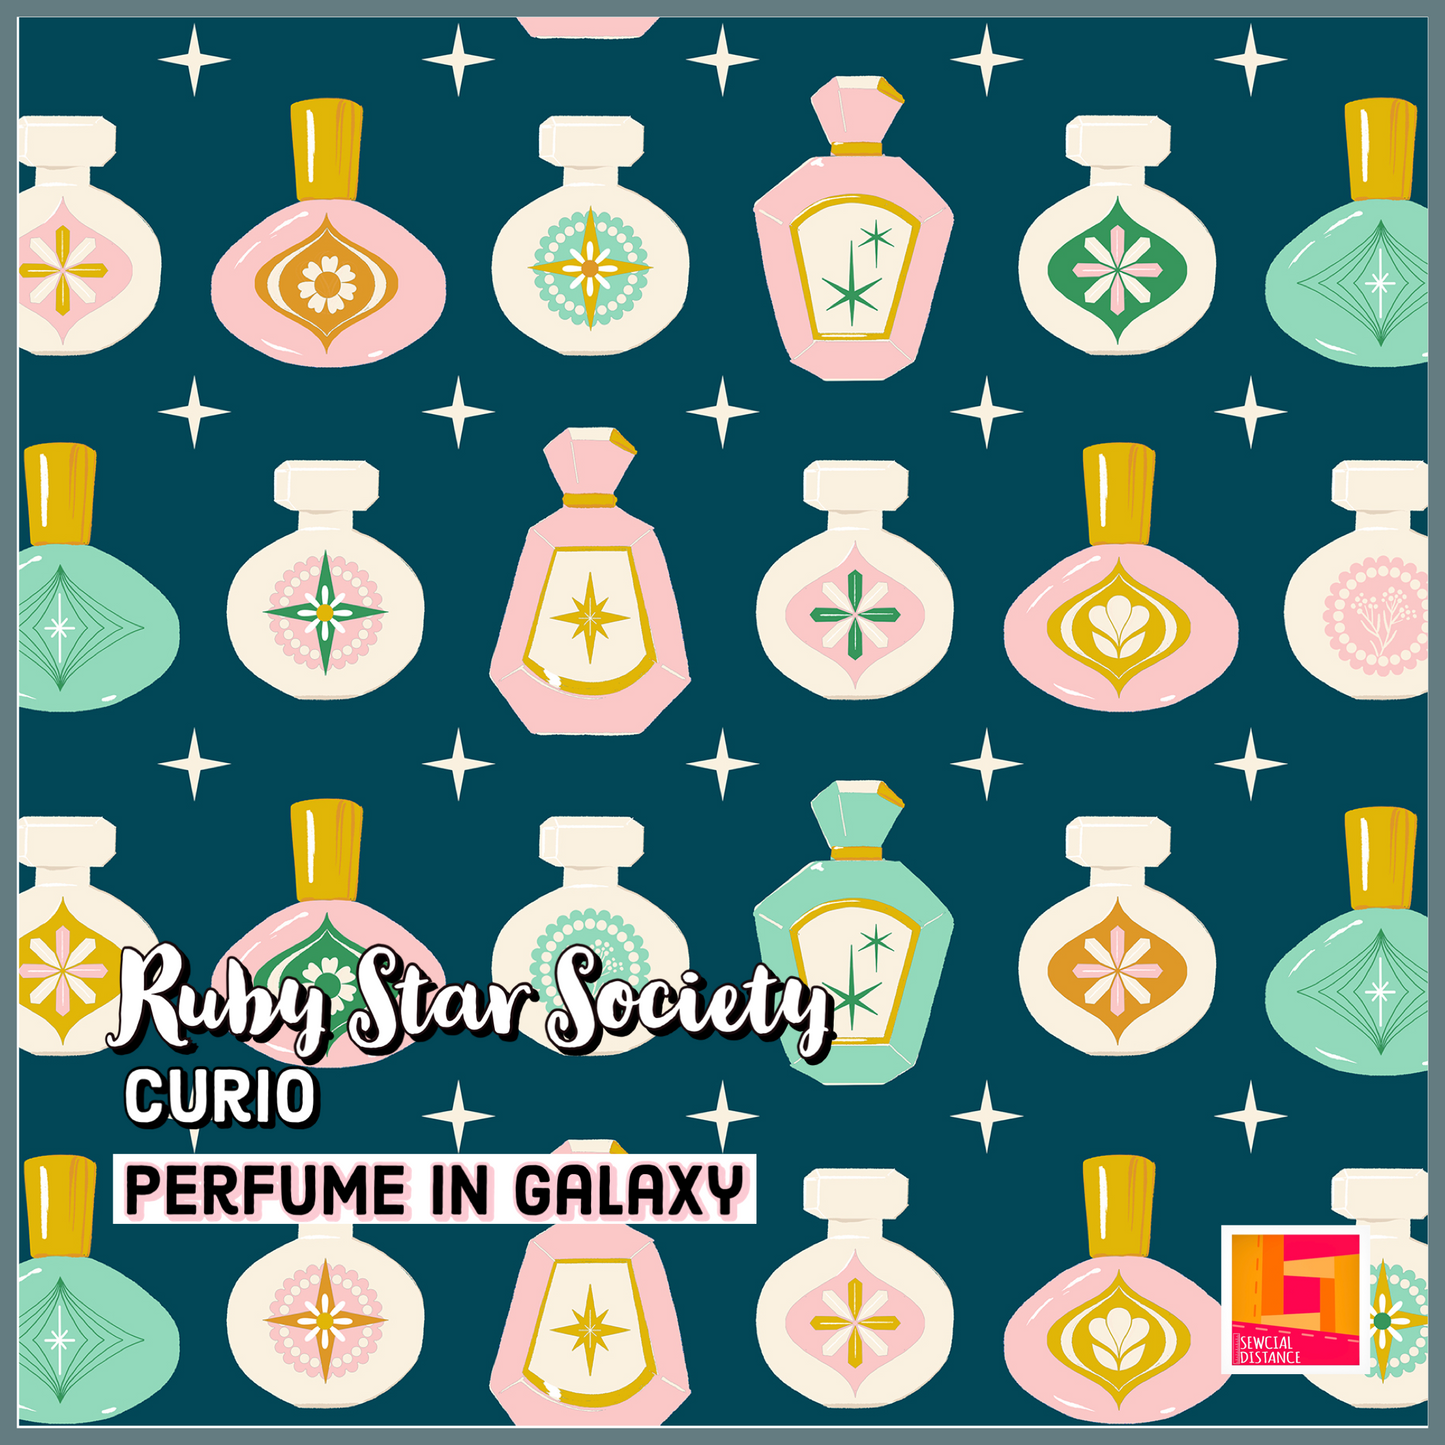 Ruby Star Society-Curio-Perfume in Galaxy